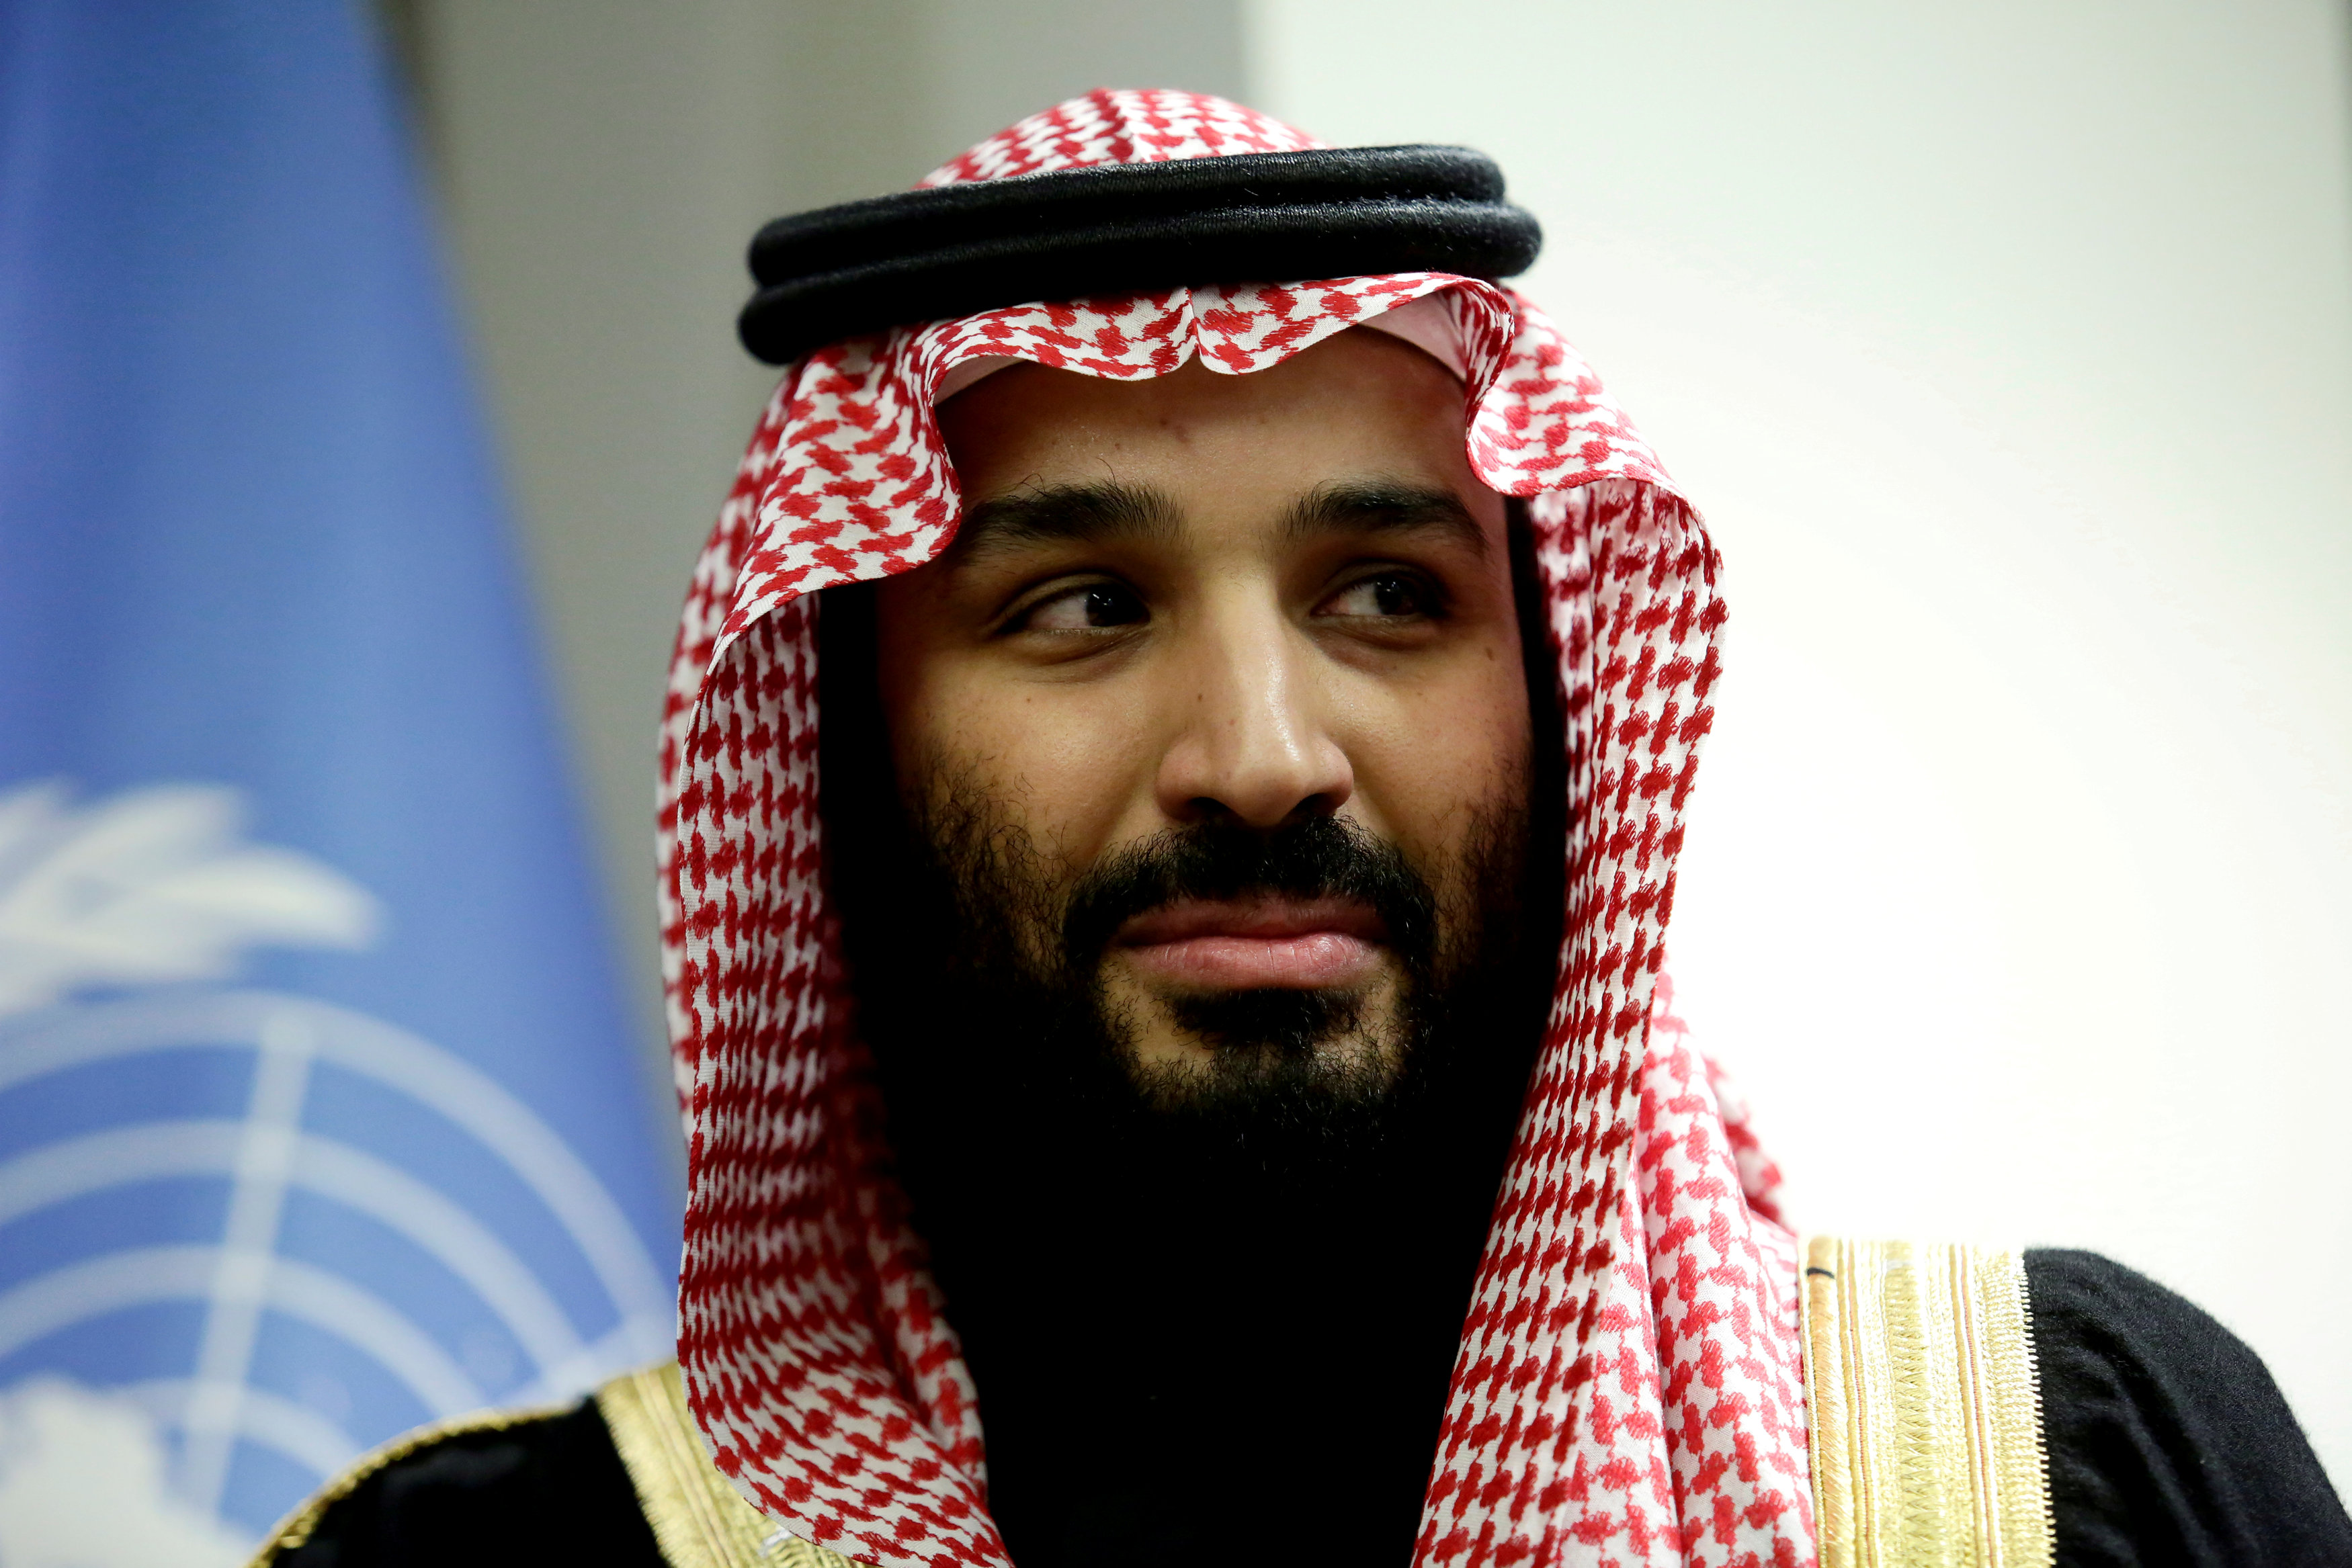 El príncipe heredero Mohamed bin Salman, según la CIA, ordenó el asesinato del periodista.